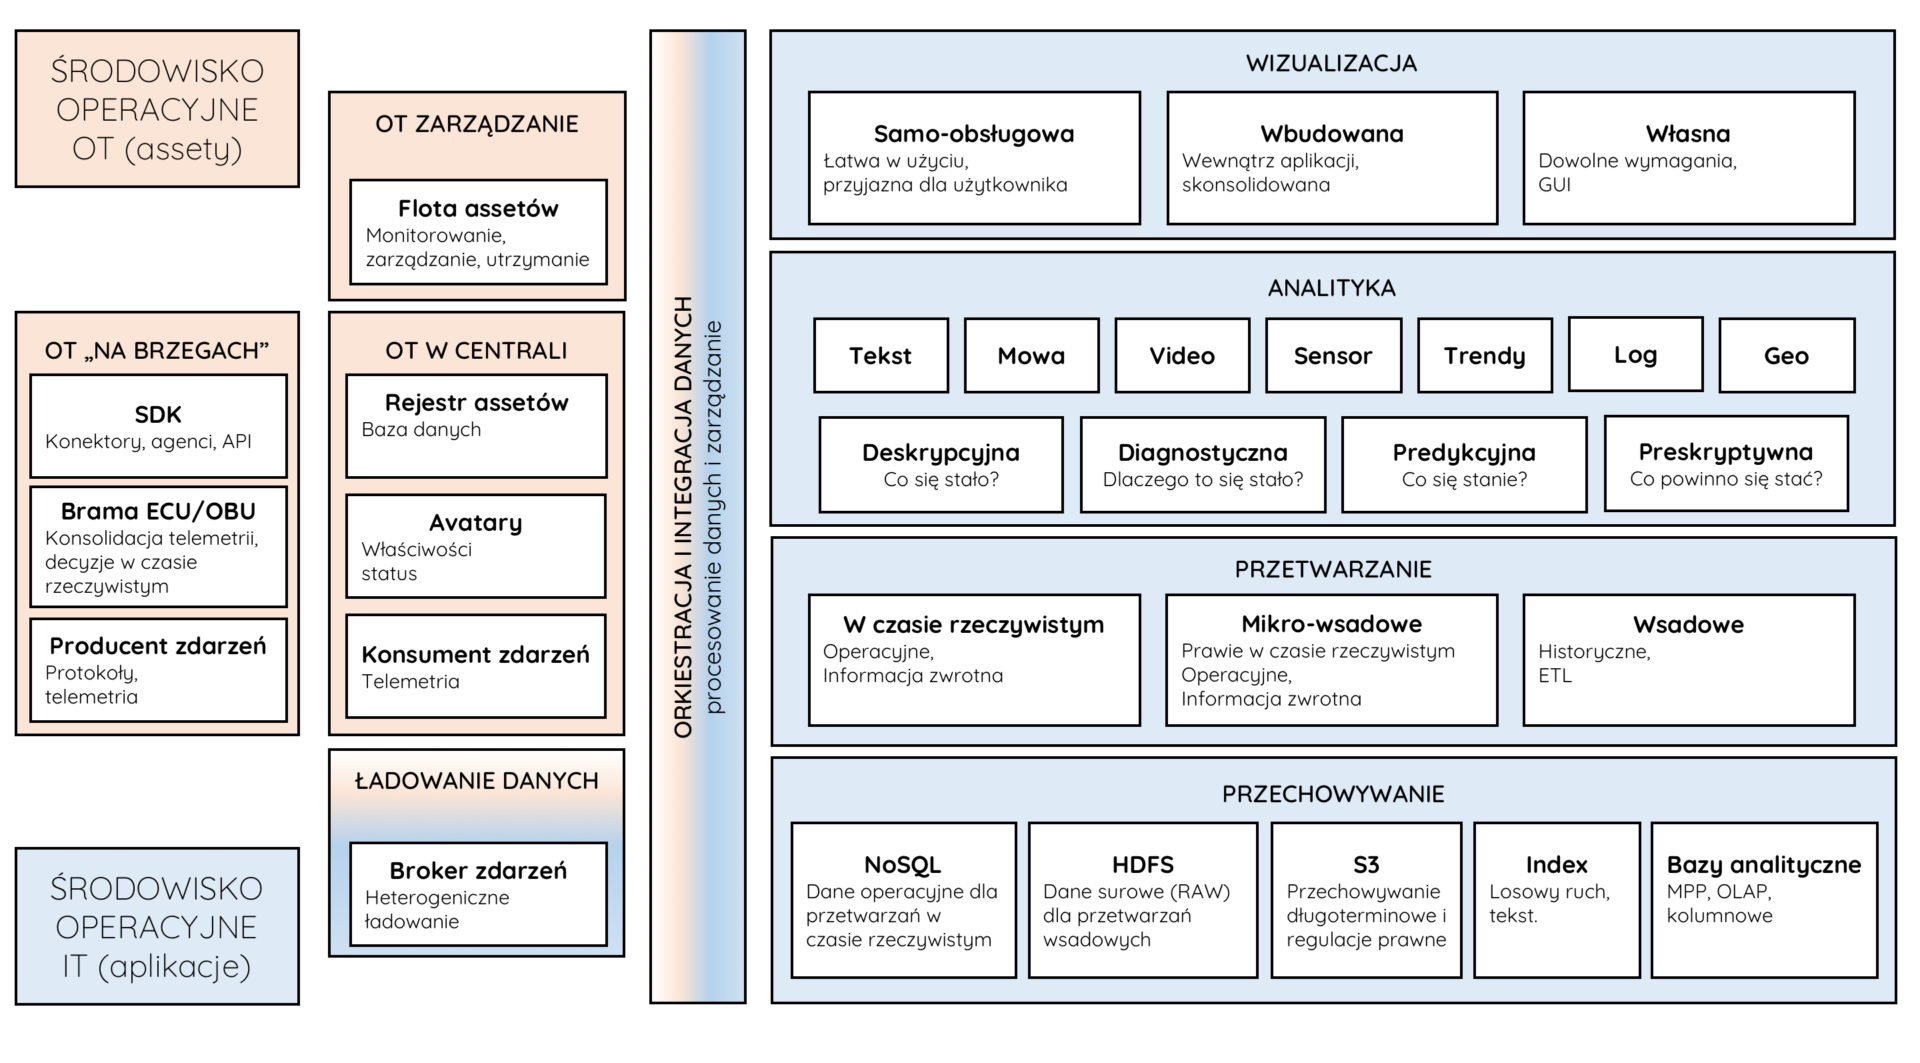 architektura big data dla IoT slajd9